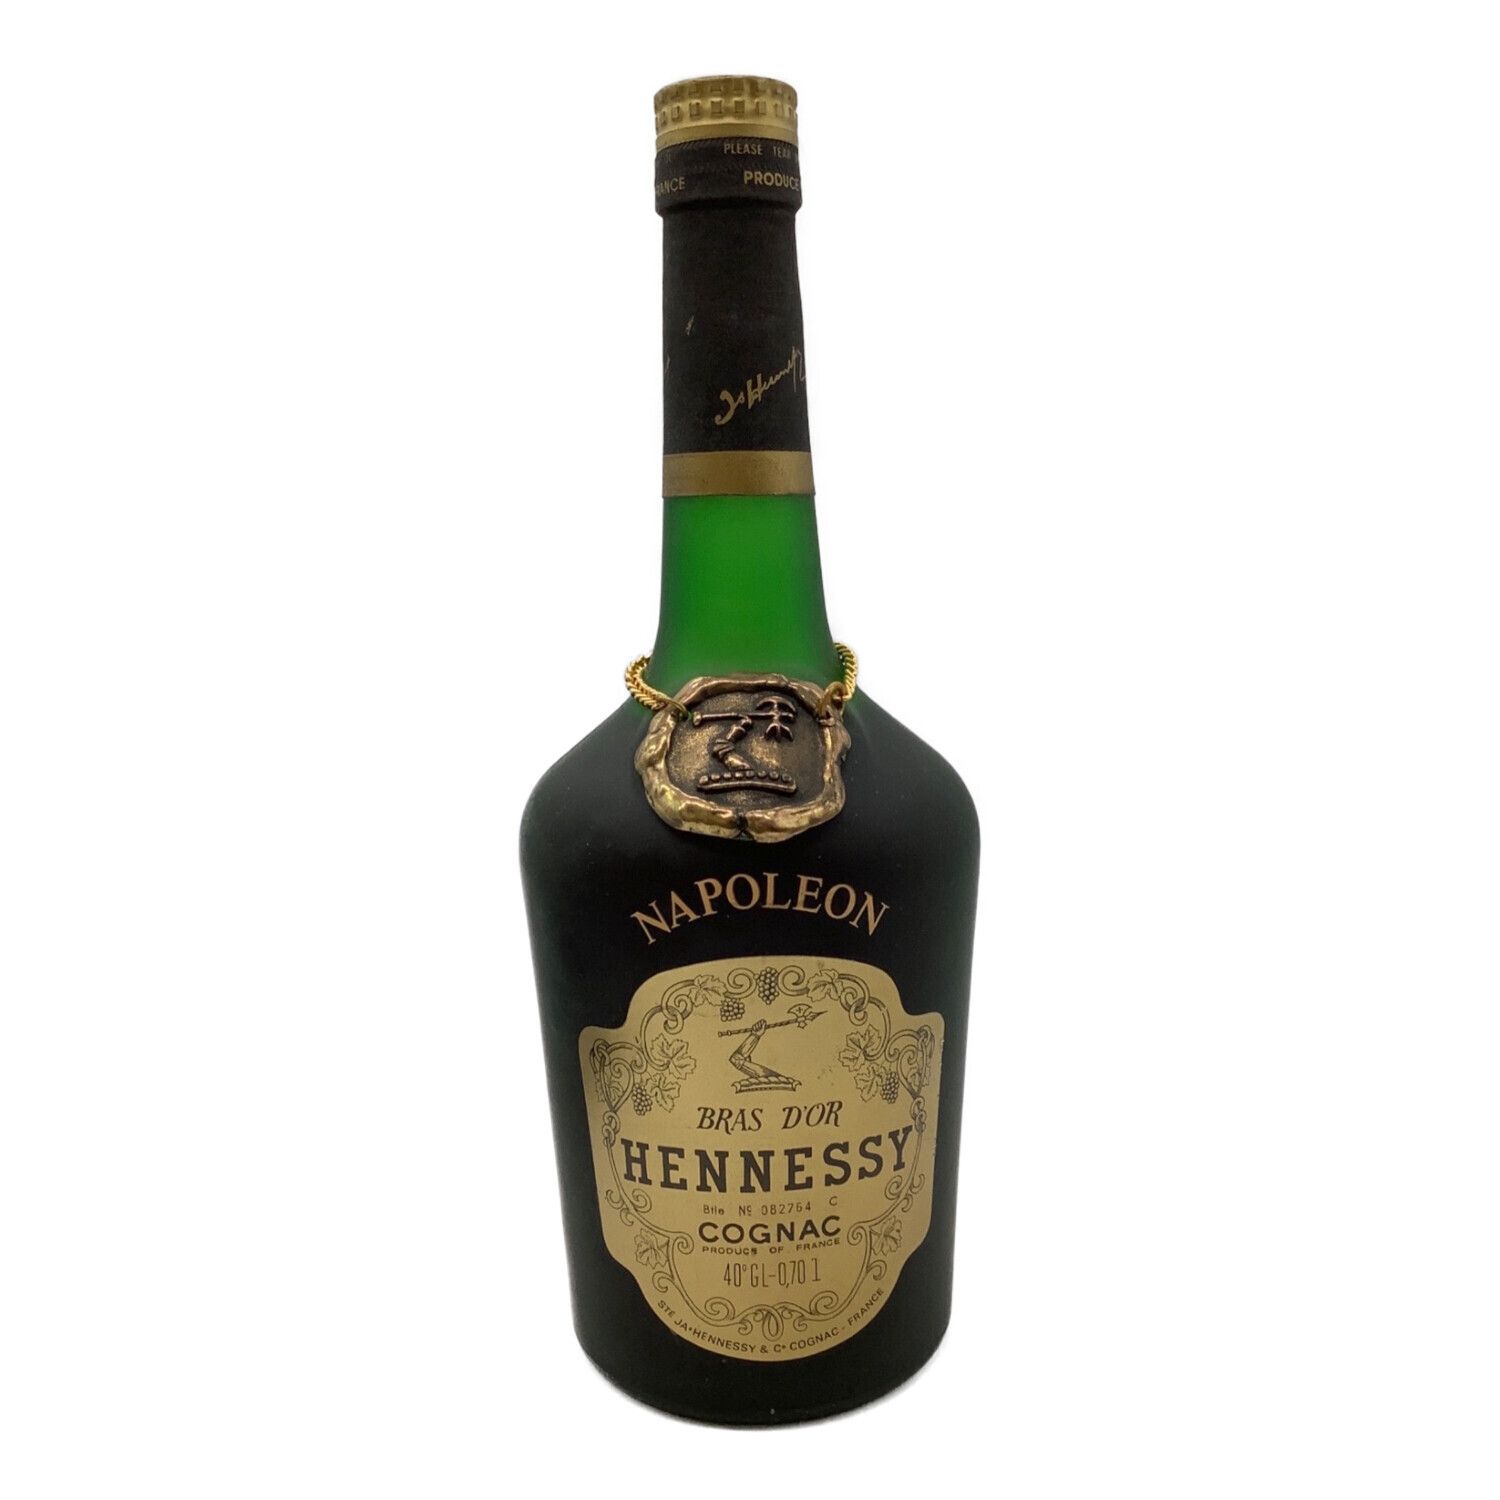 ヘネシー (Hennessy) コニャック BRAS D'OR 700ml ナポレオン 未開封